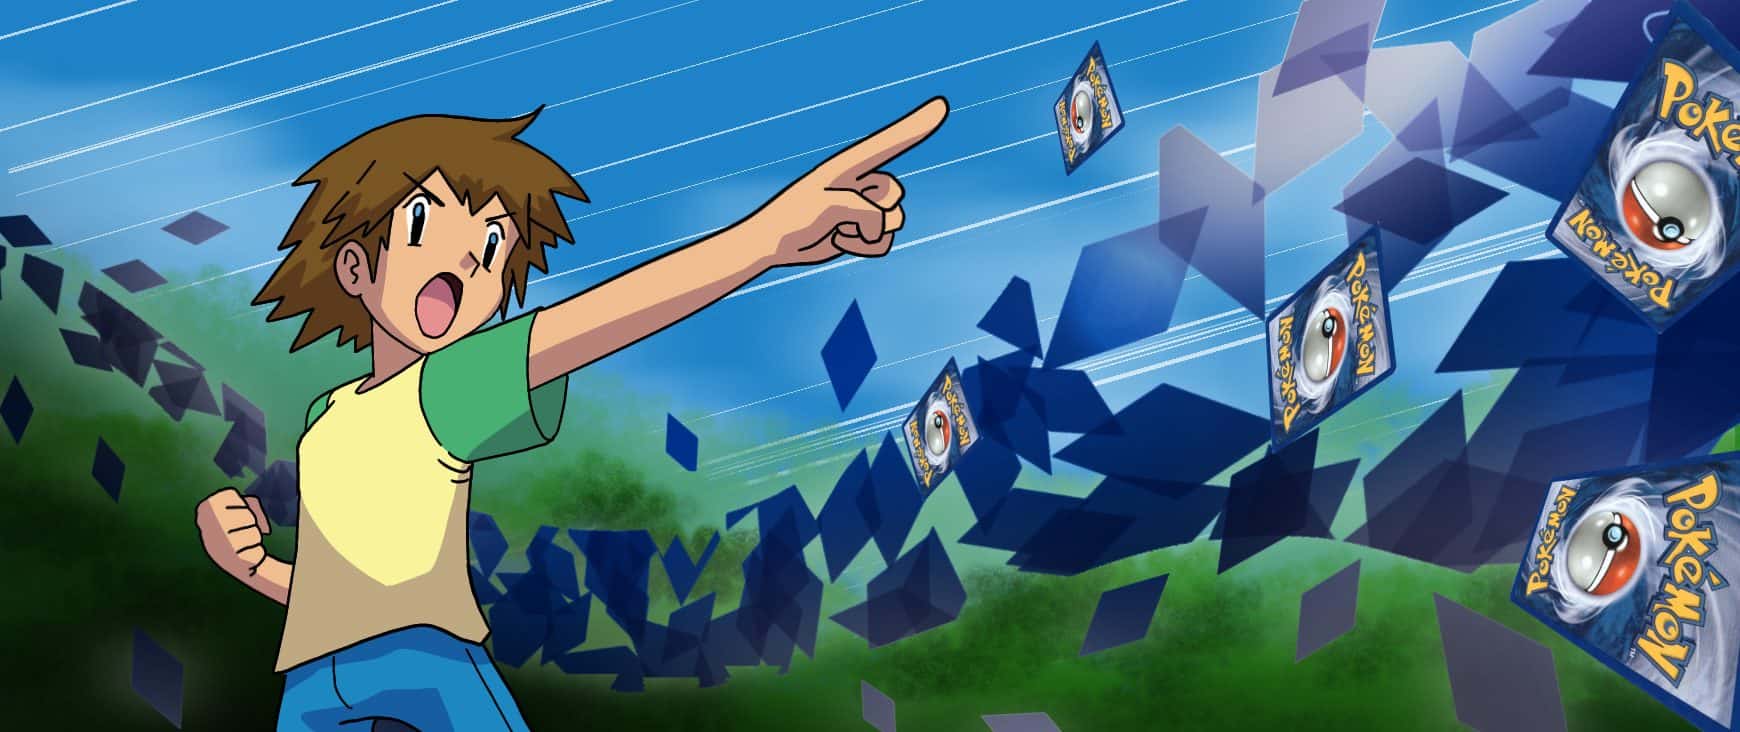 Pokémon cards flying through the air!